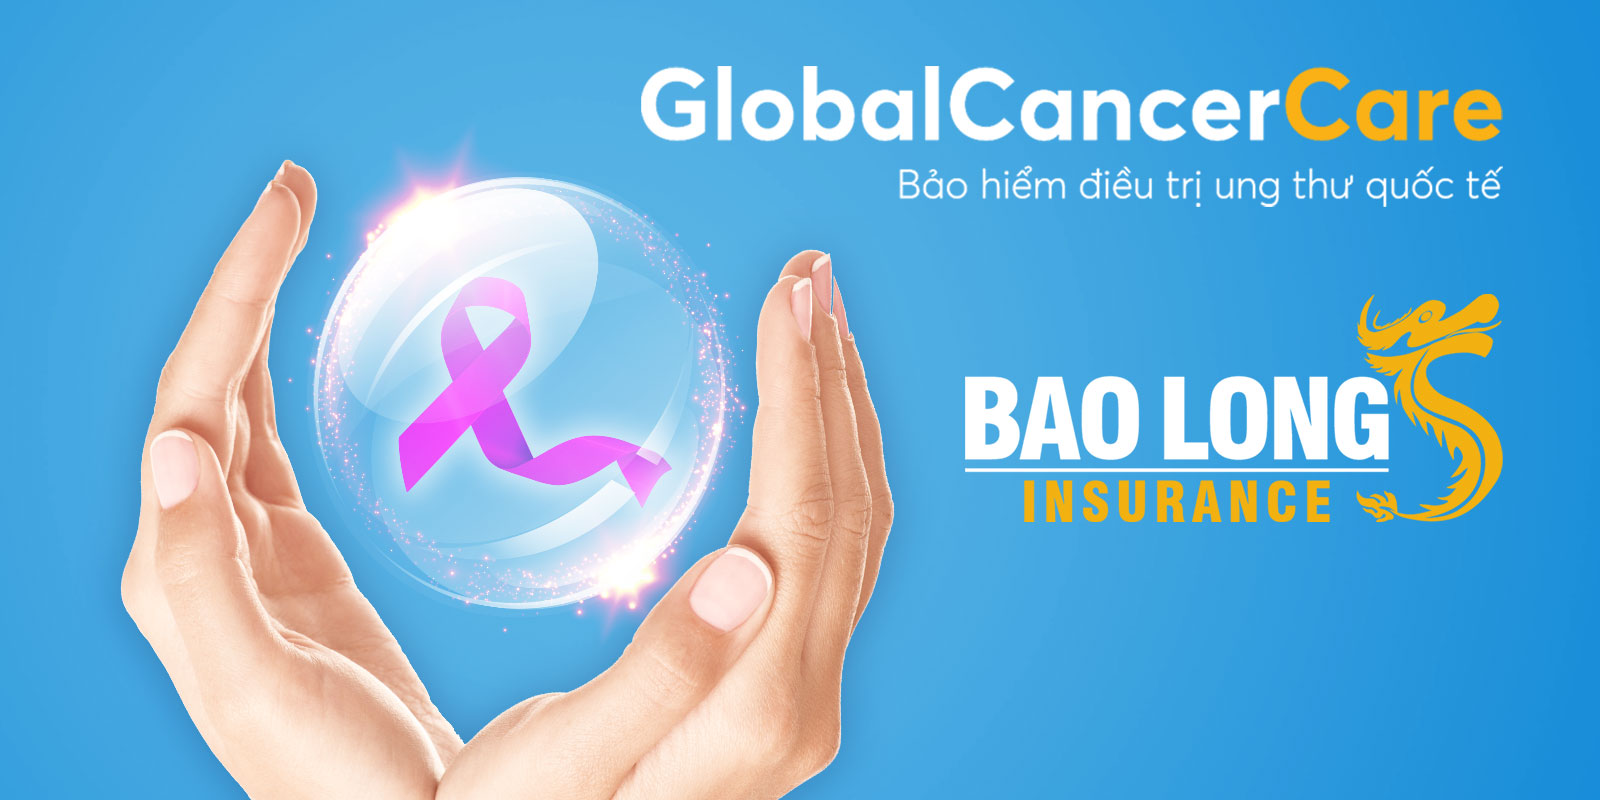 Bảo hiểm điều trị ung thư quốc tế Bảo Long